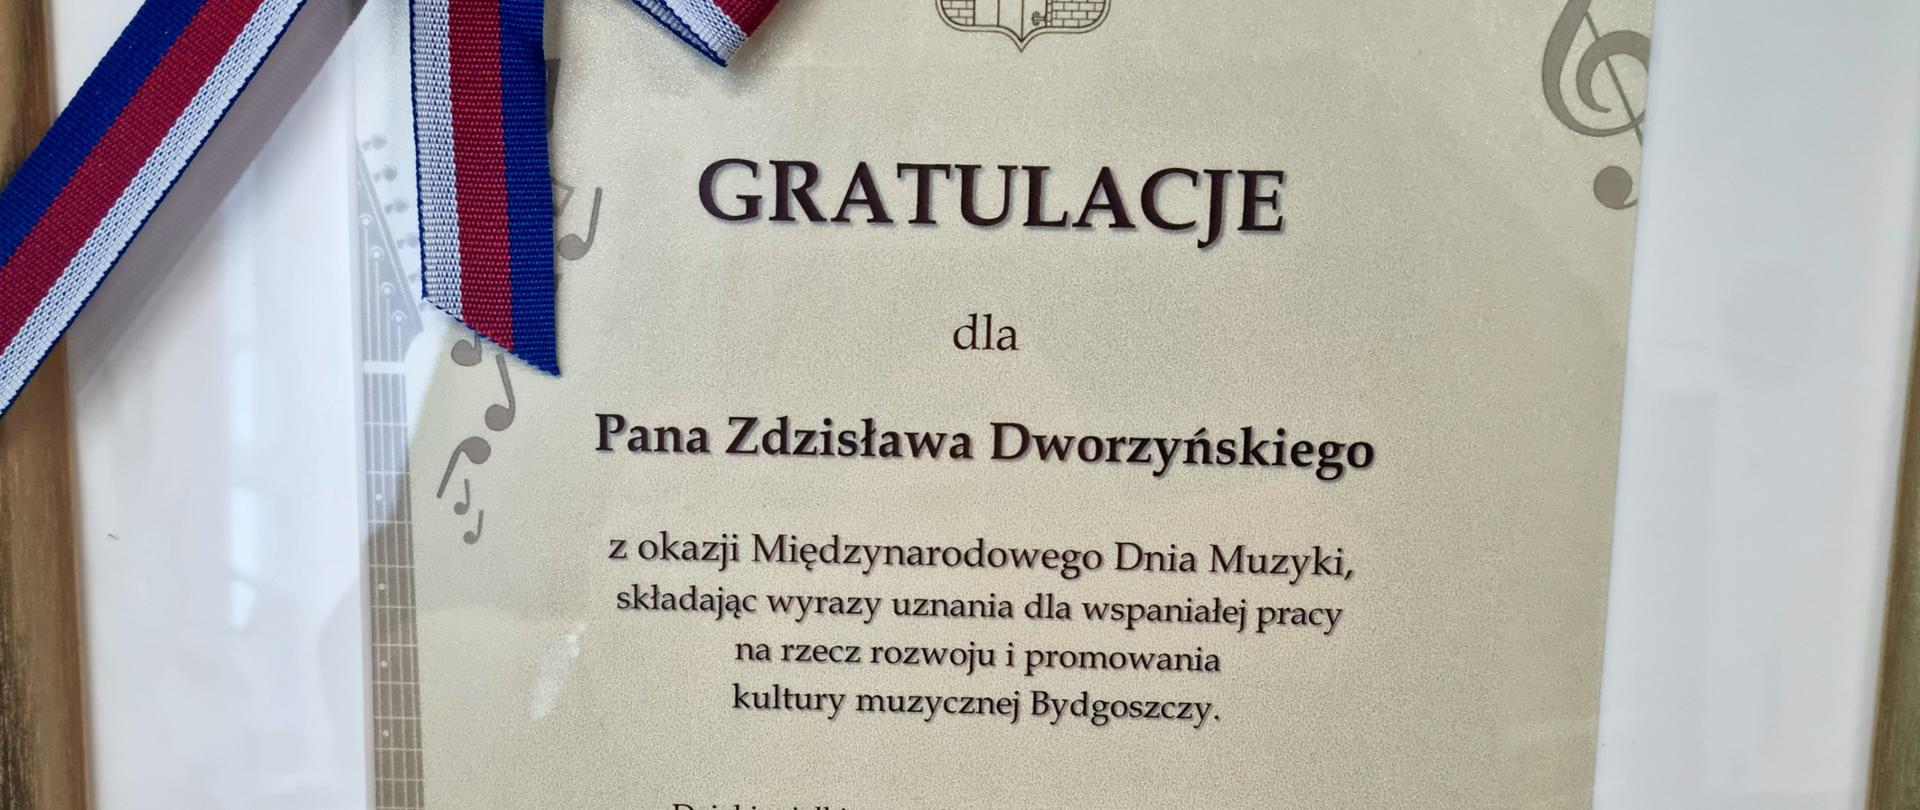 Dyplom gratulacyjny dla Pana Zdzisława Dworzyńskiego za pracę na rzecz rozwoju kultury bydgoskiej